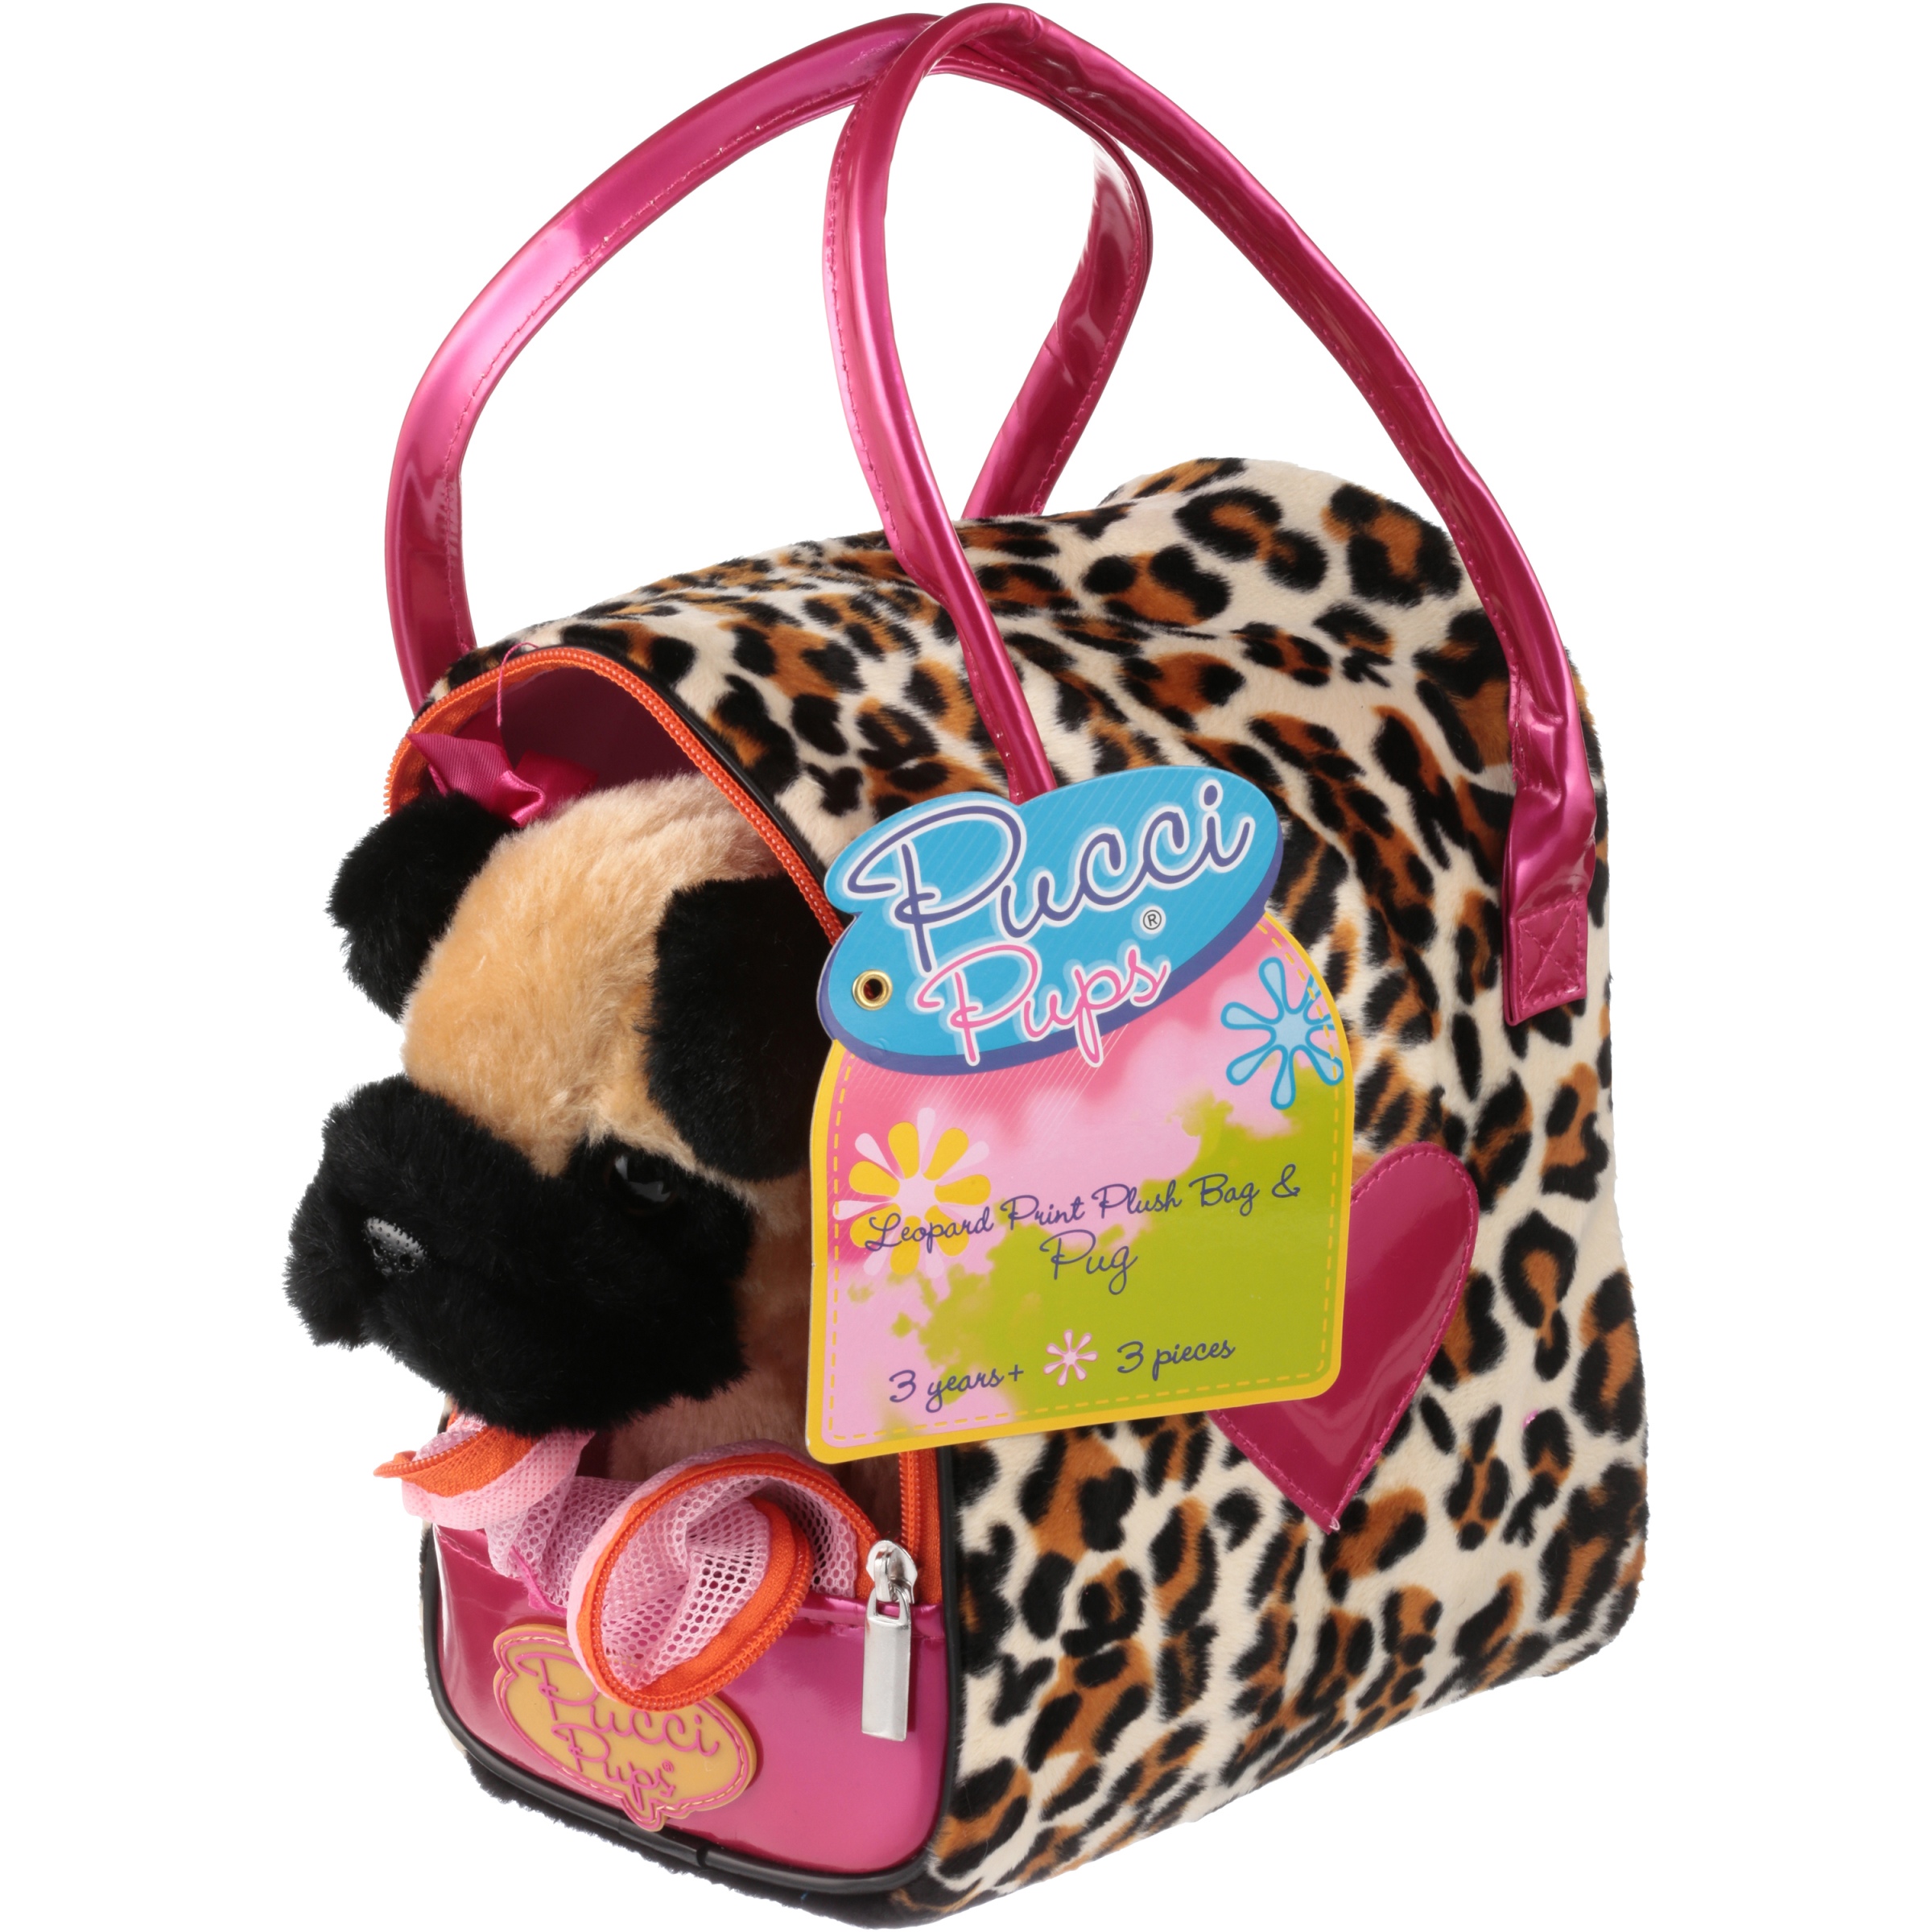 Pucci Pups Pug & Leopard Print Bag - image 2 of 4